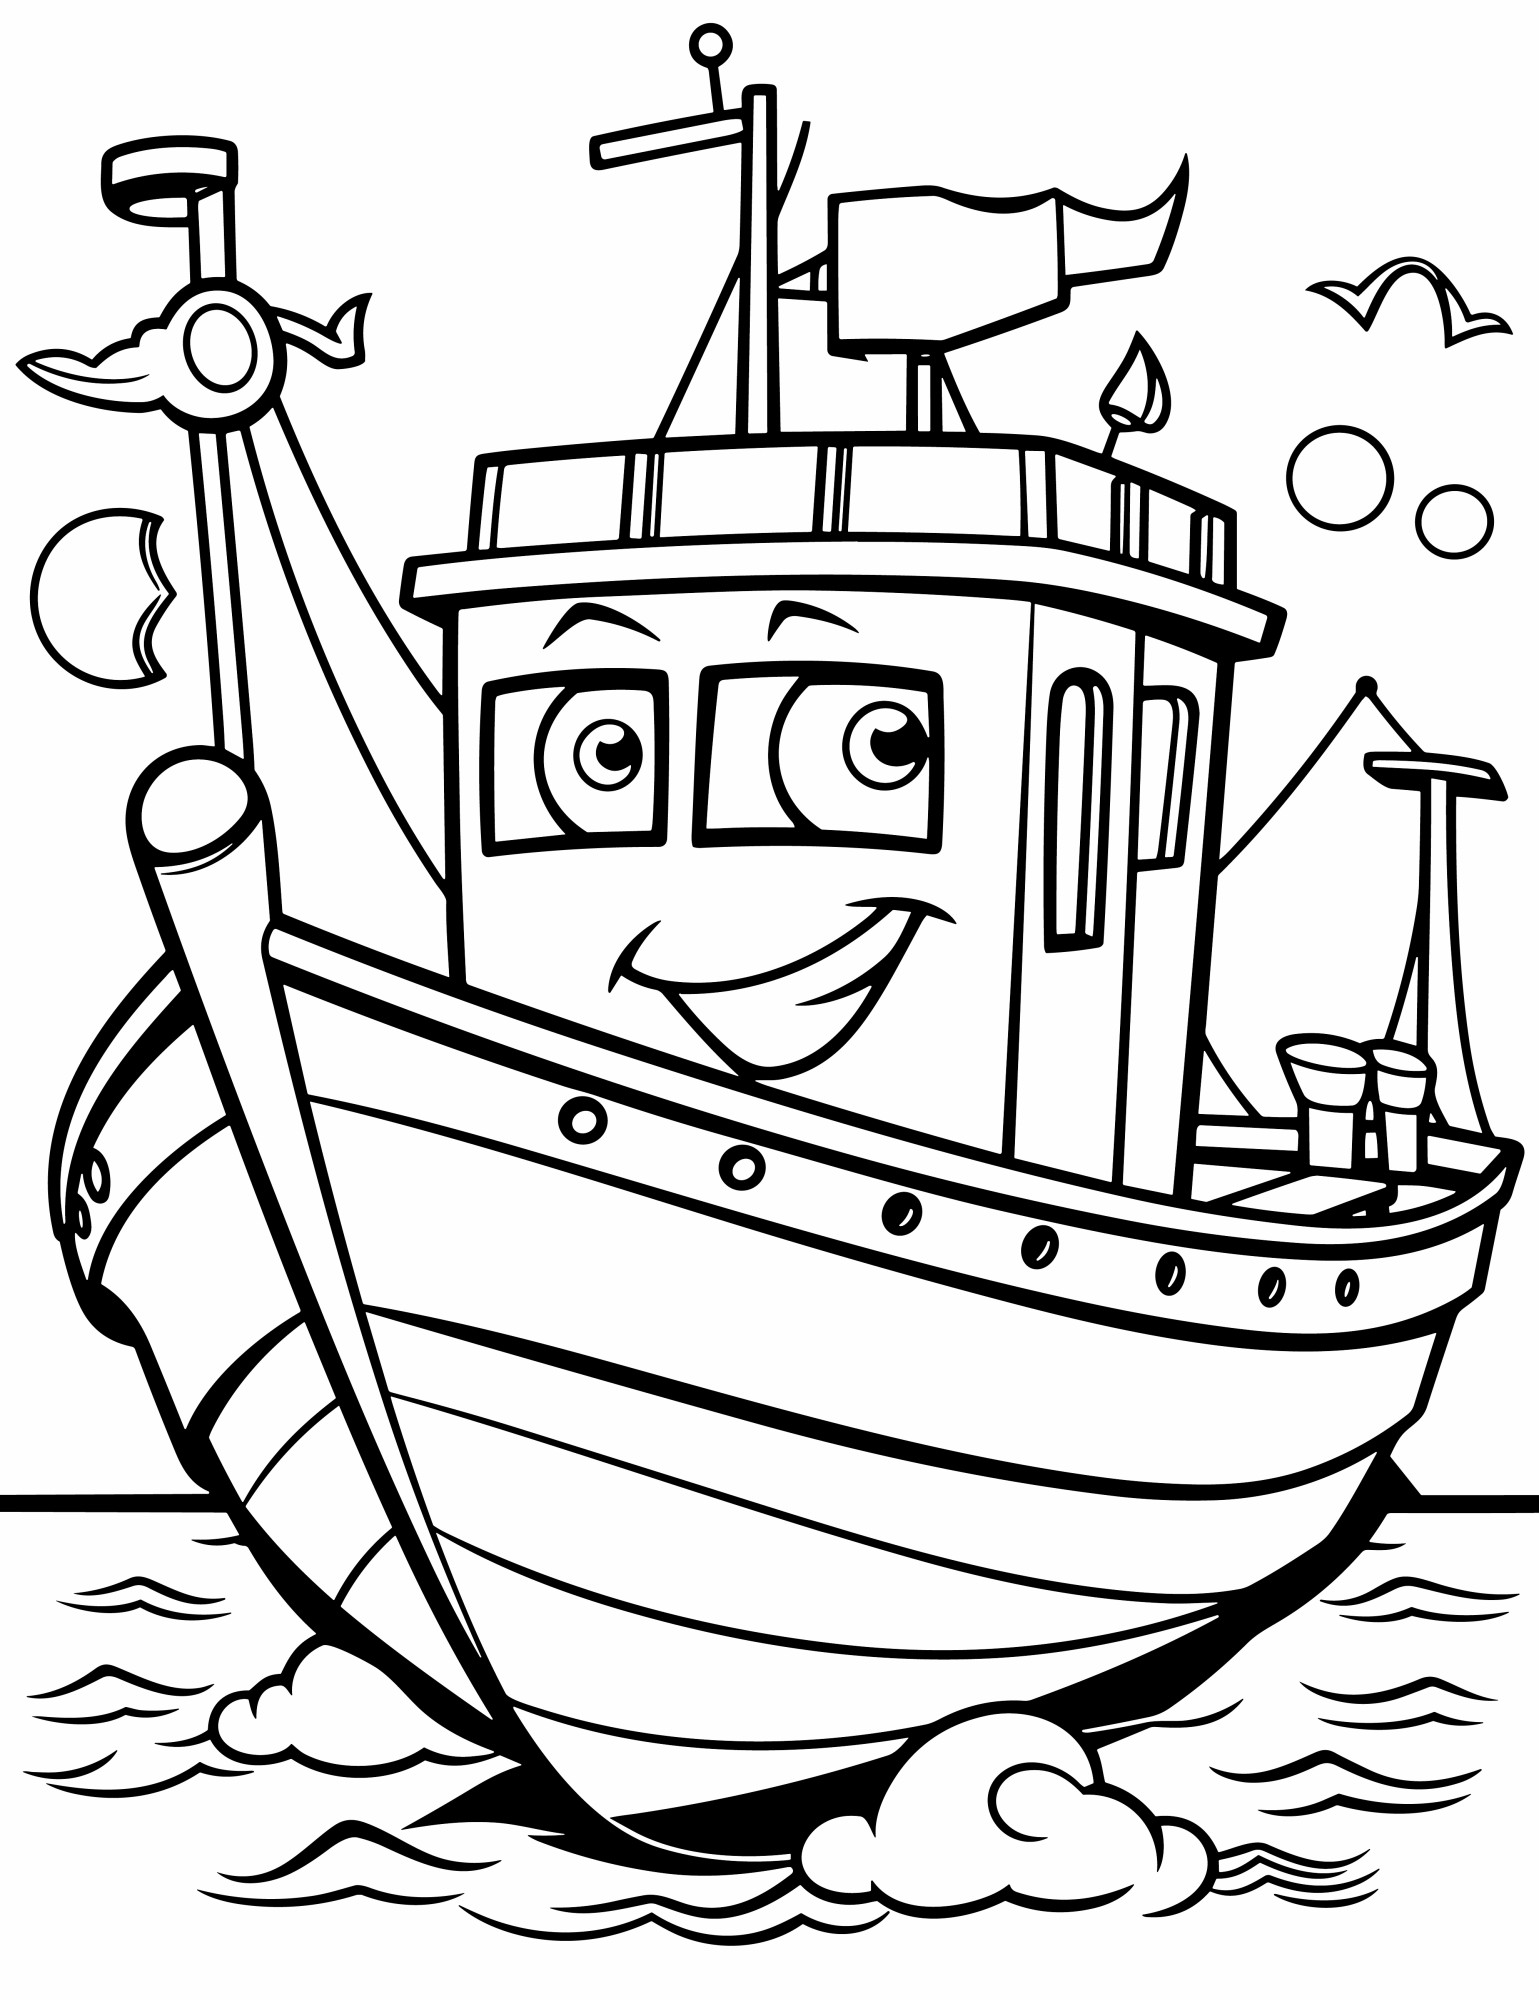 Раскраска для детей: красивый мультяшный корабль с лицом